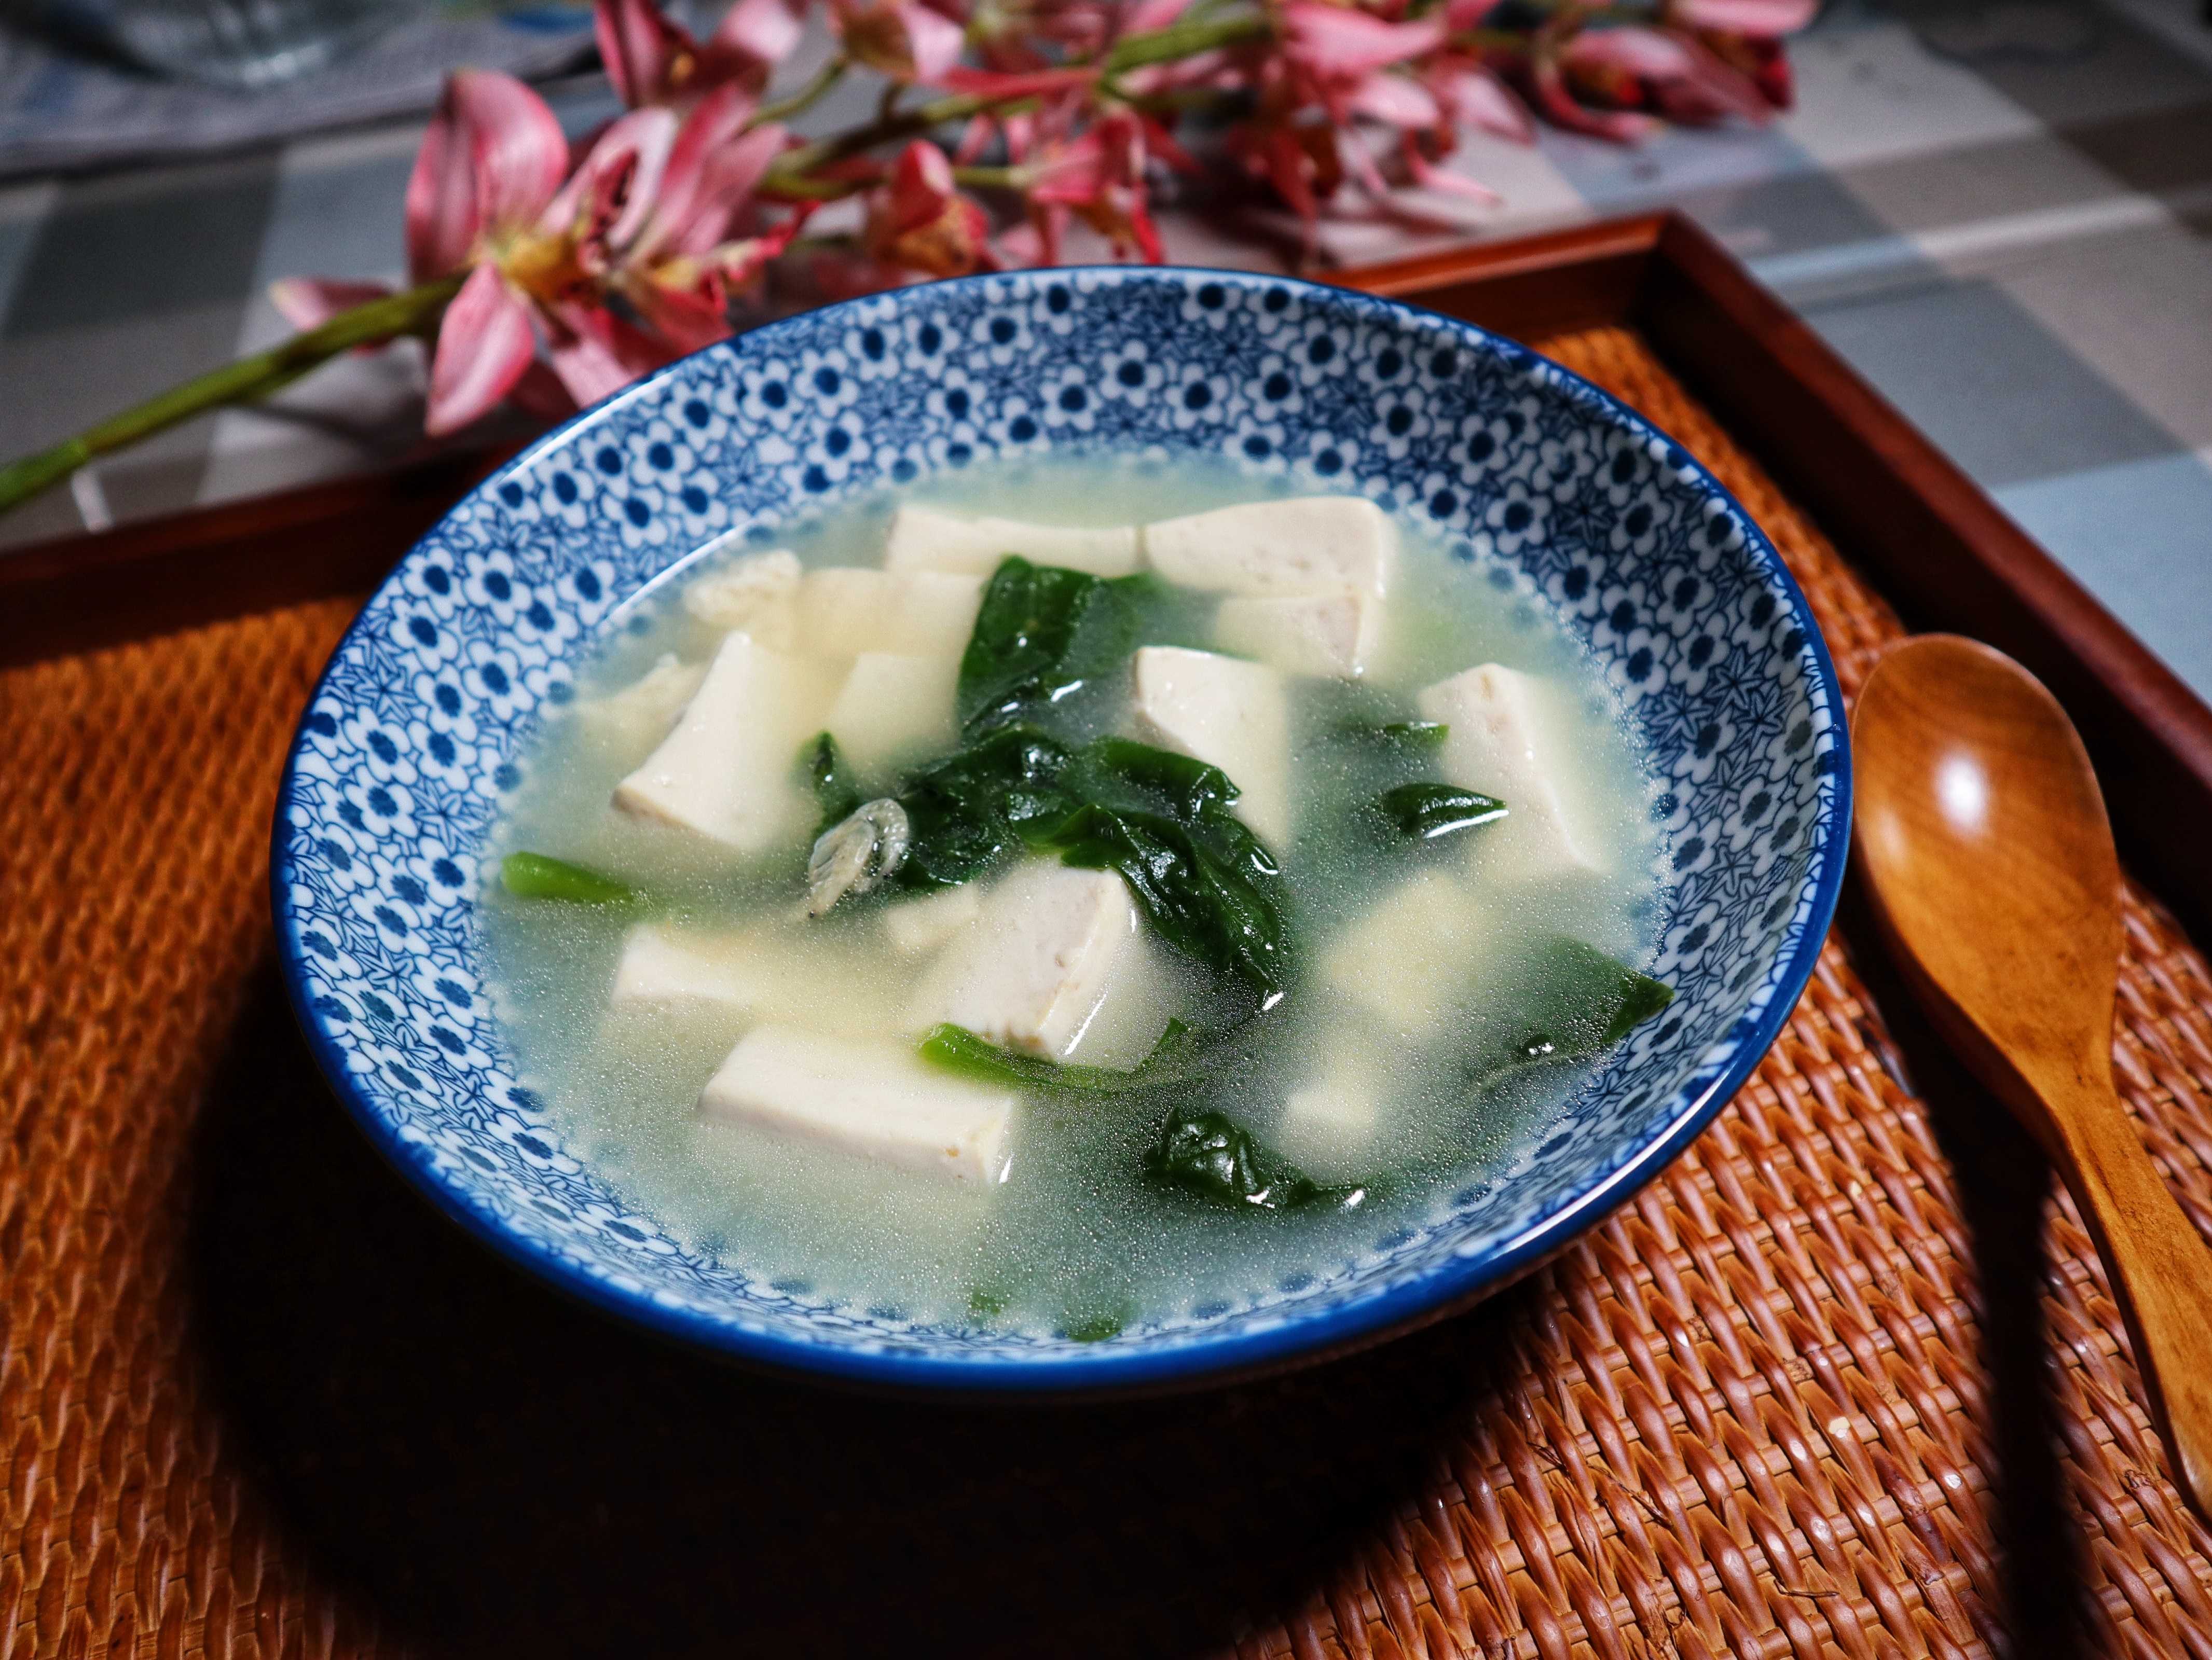 出锅咯~一道简单美味的豆腐潺菜汤就制作完成啦,非常适合炎炎夏天喝